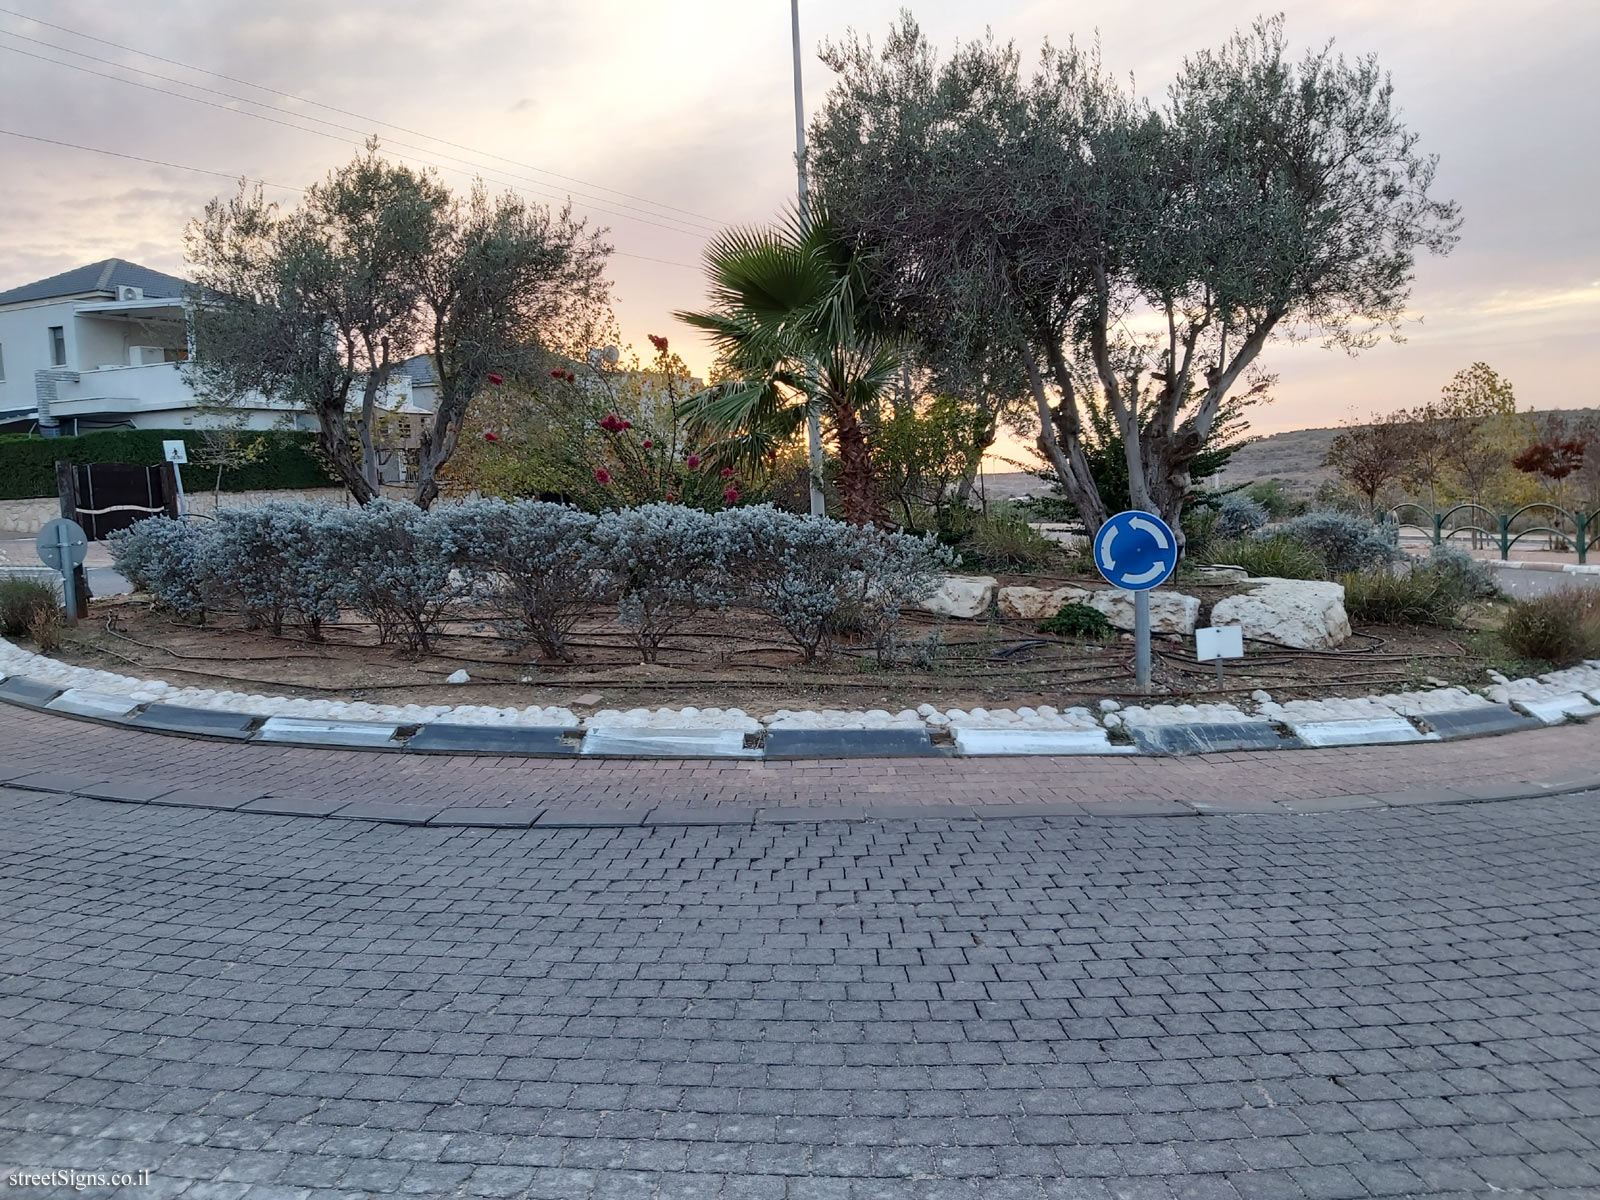 Beit Arye - Nathan Yonathan Square